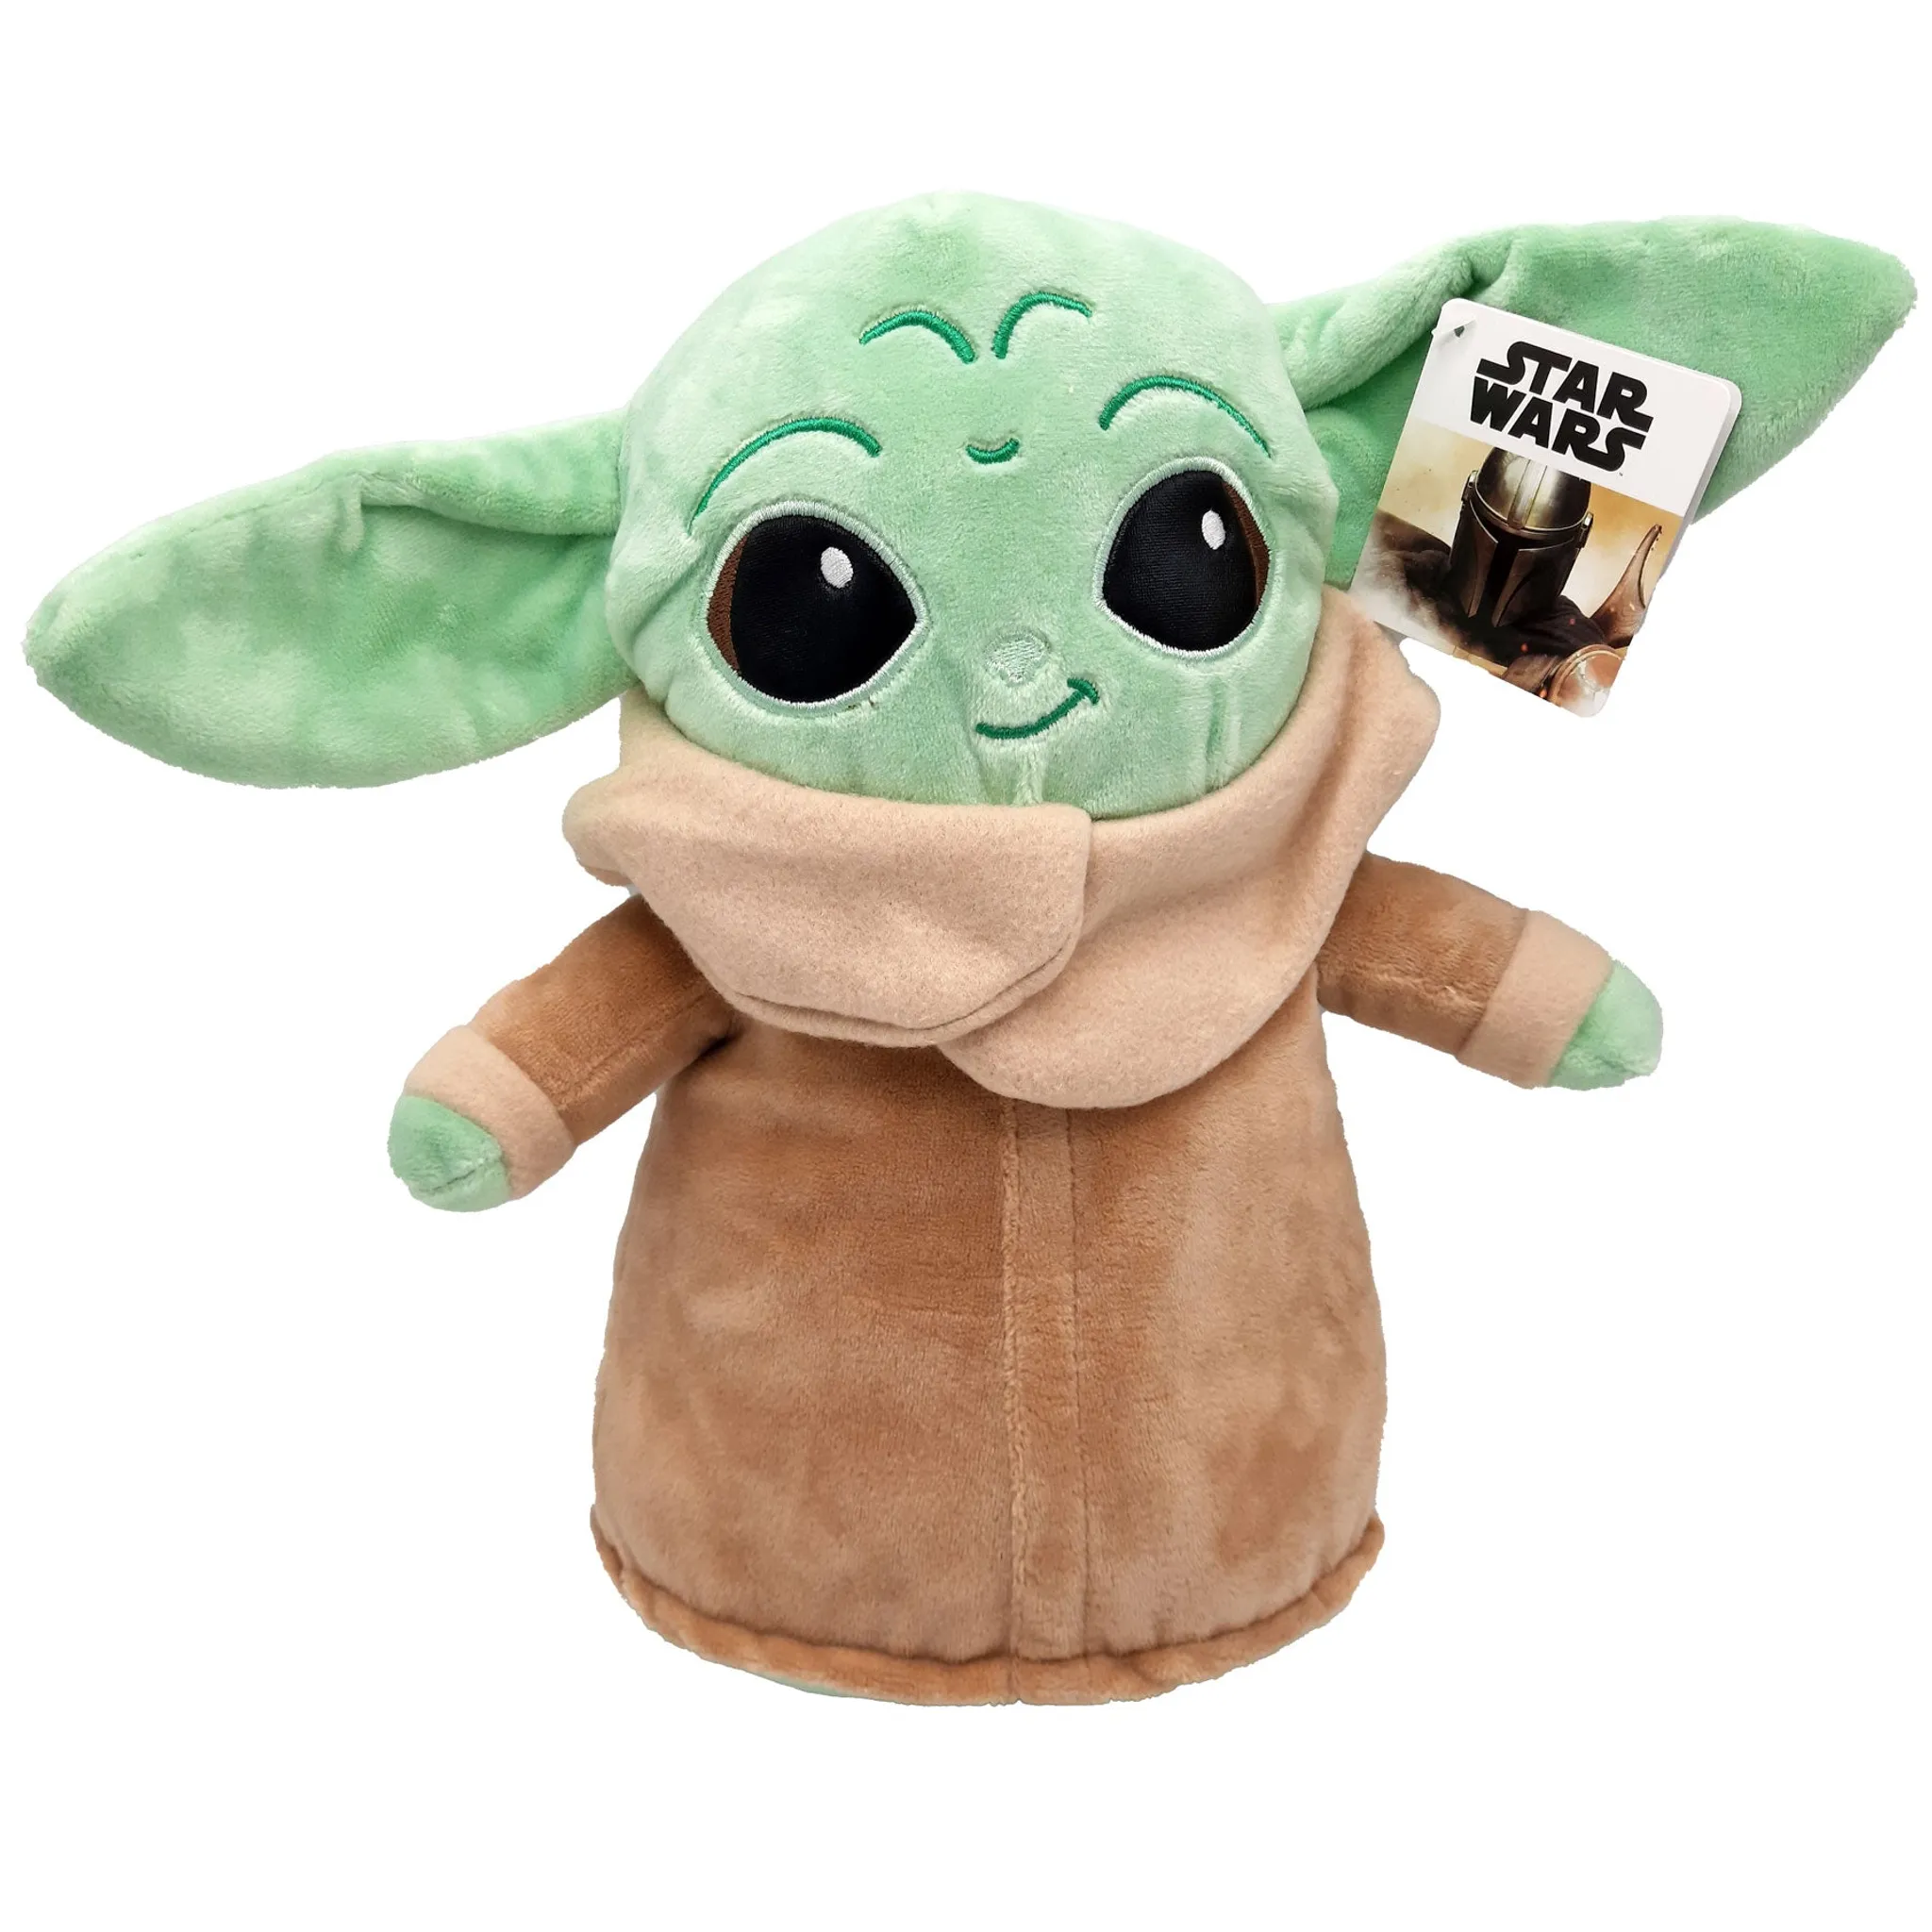 Star Wars: The Mandalorian - Baby Yoda The